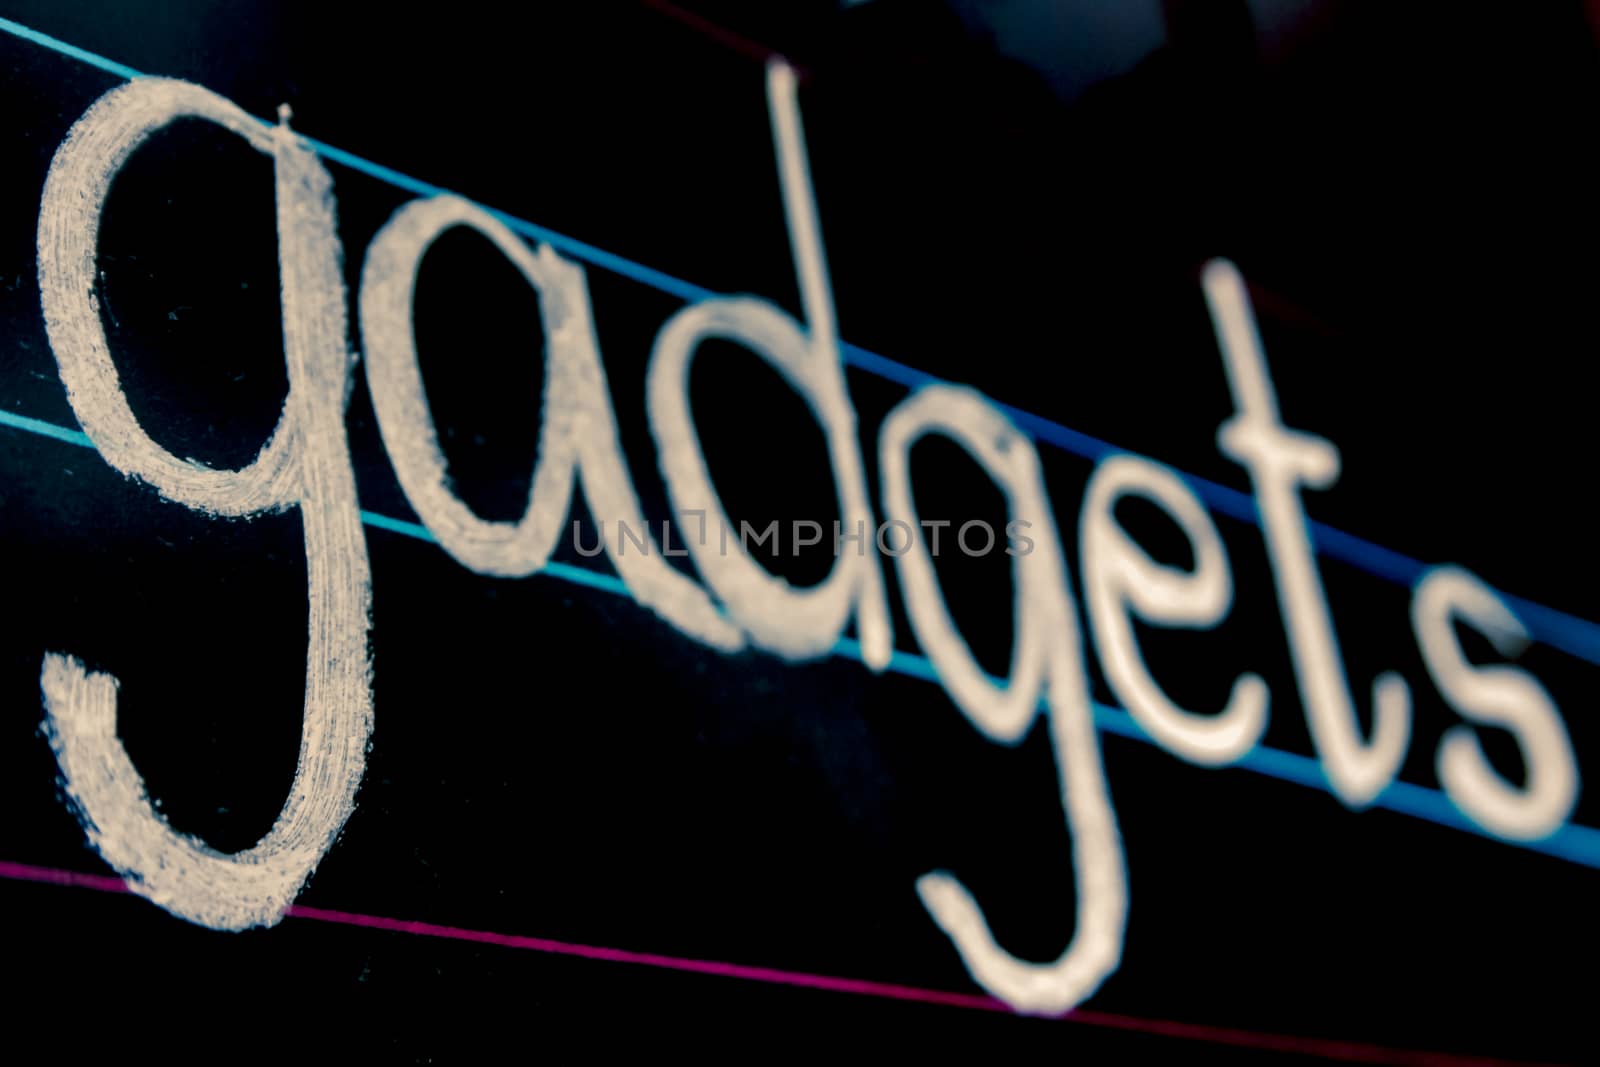 gadgets phrase handwritten on blackboard by yands